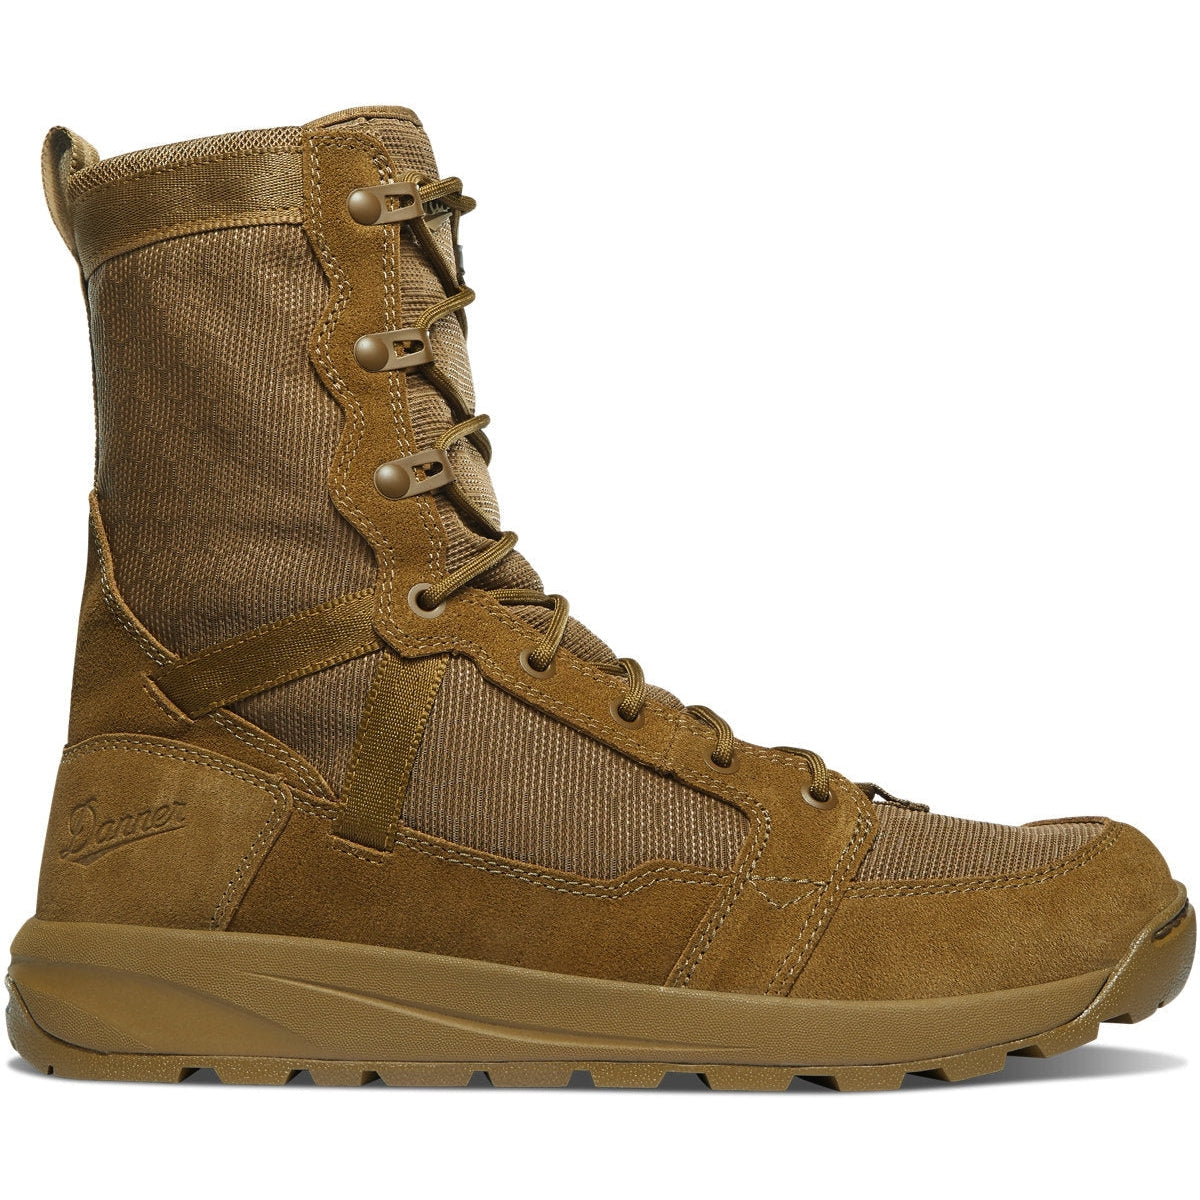 Danner Men's Resurgent 8" Slip Resist Military Work Boot -Coyote- 50110 6 / Medium / Wheat - Overlook Boots